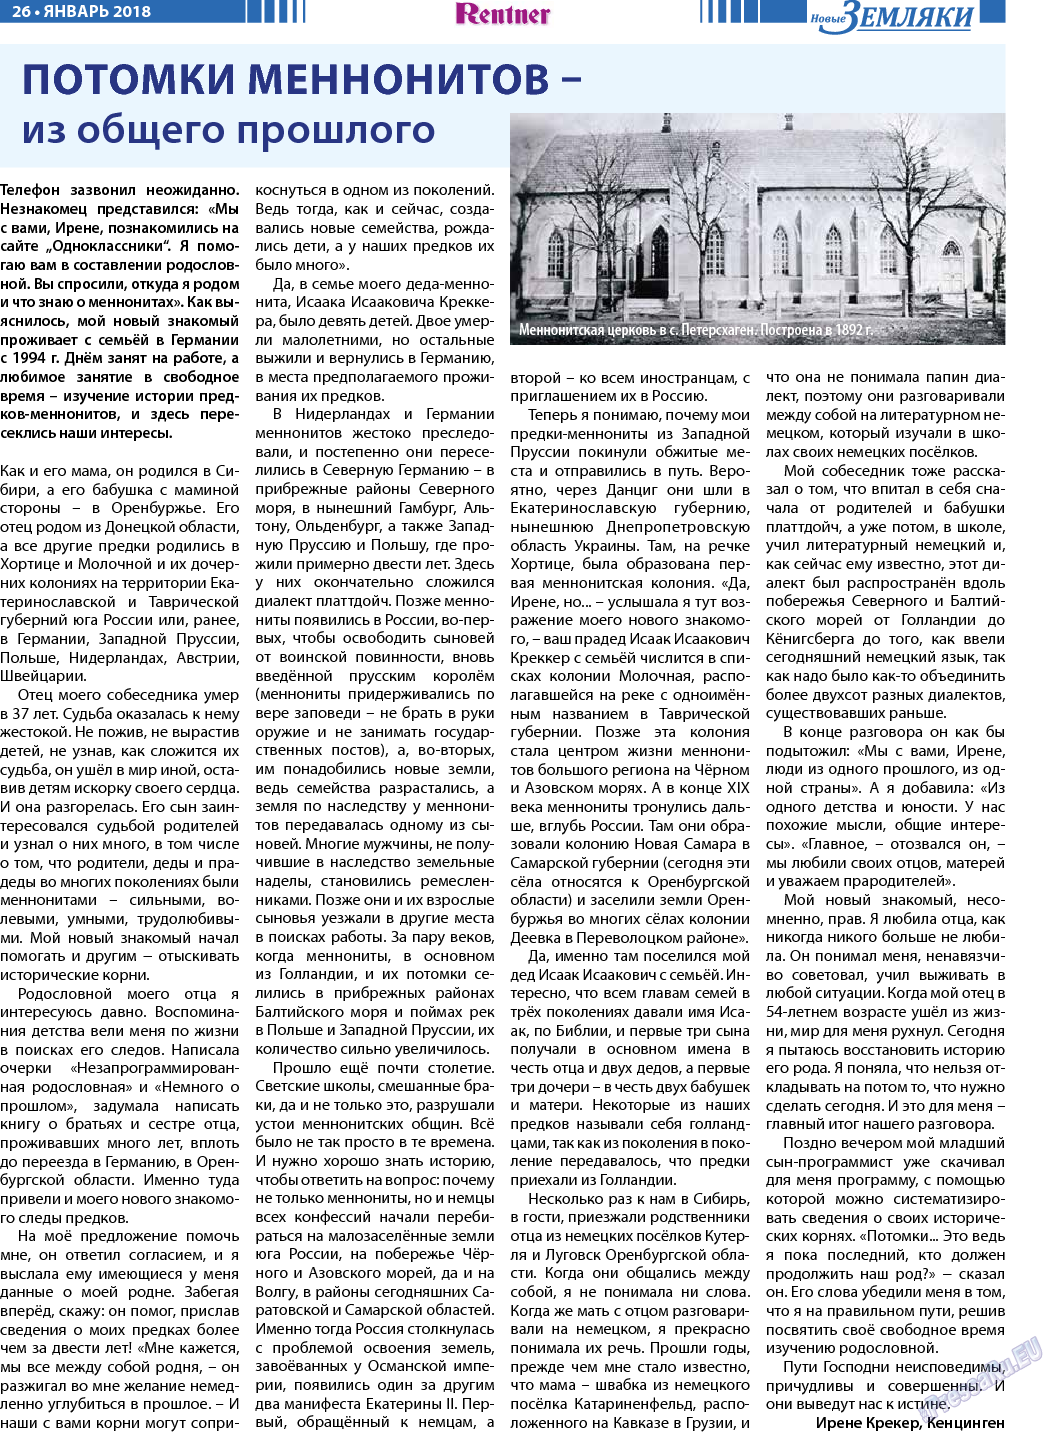 Новые Земляки, газета. 2018 №1 стр.26